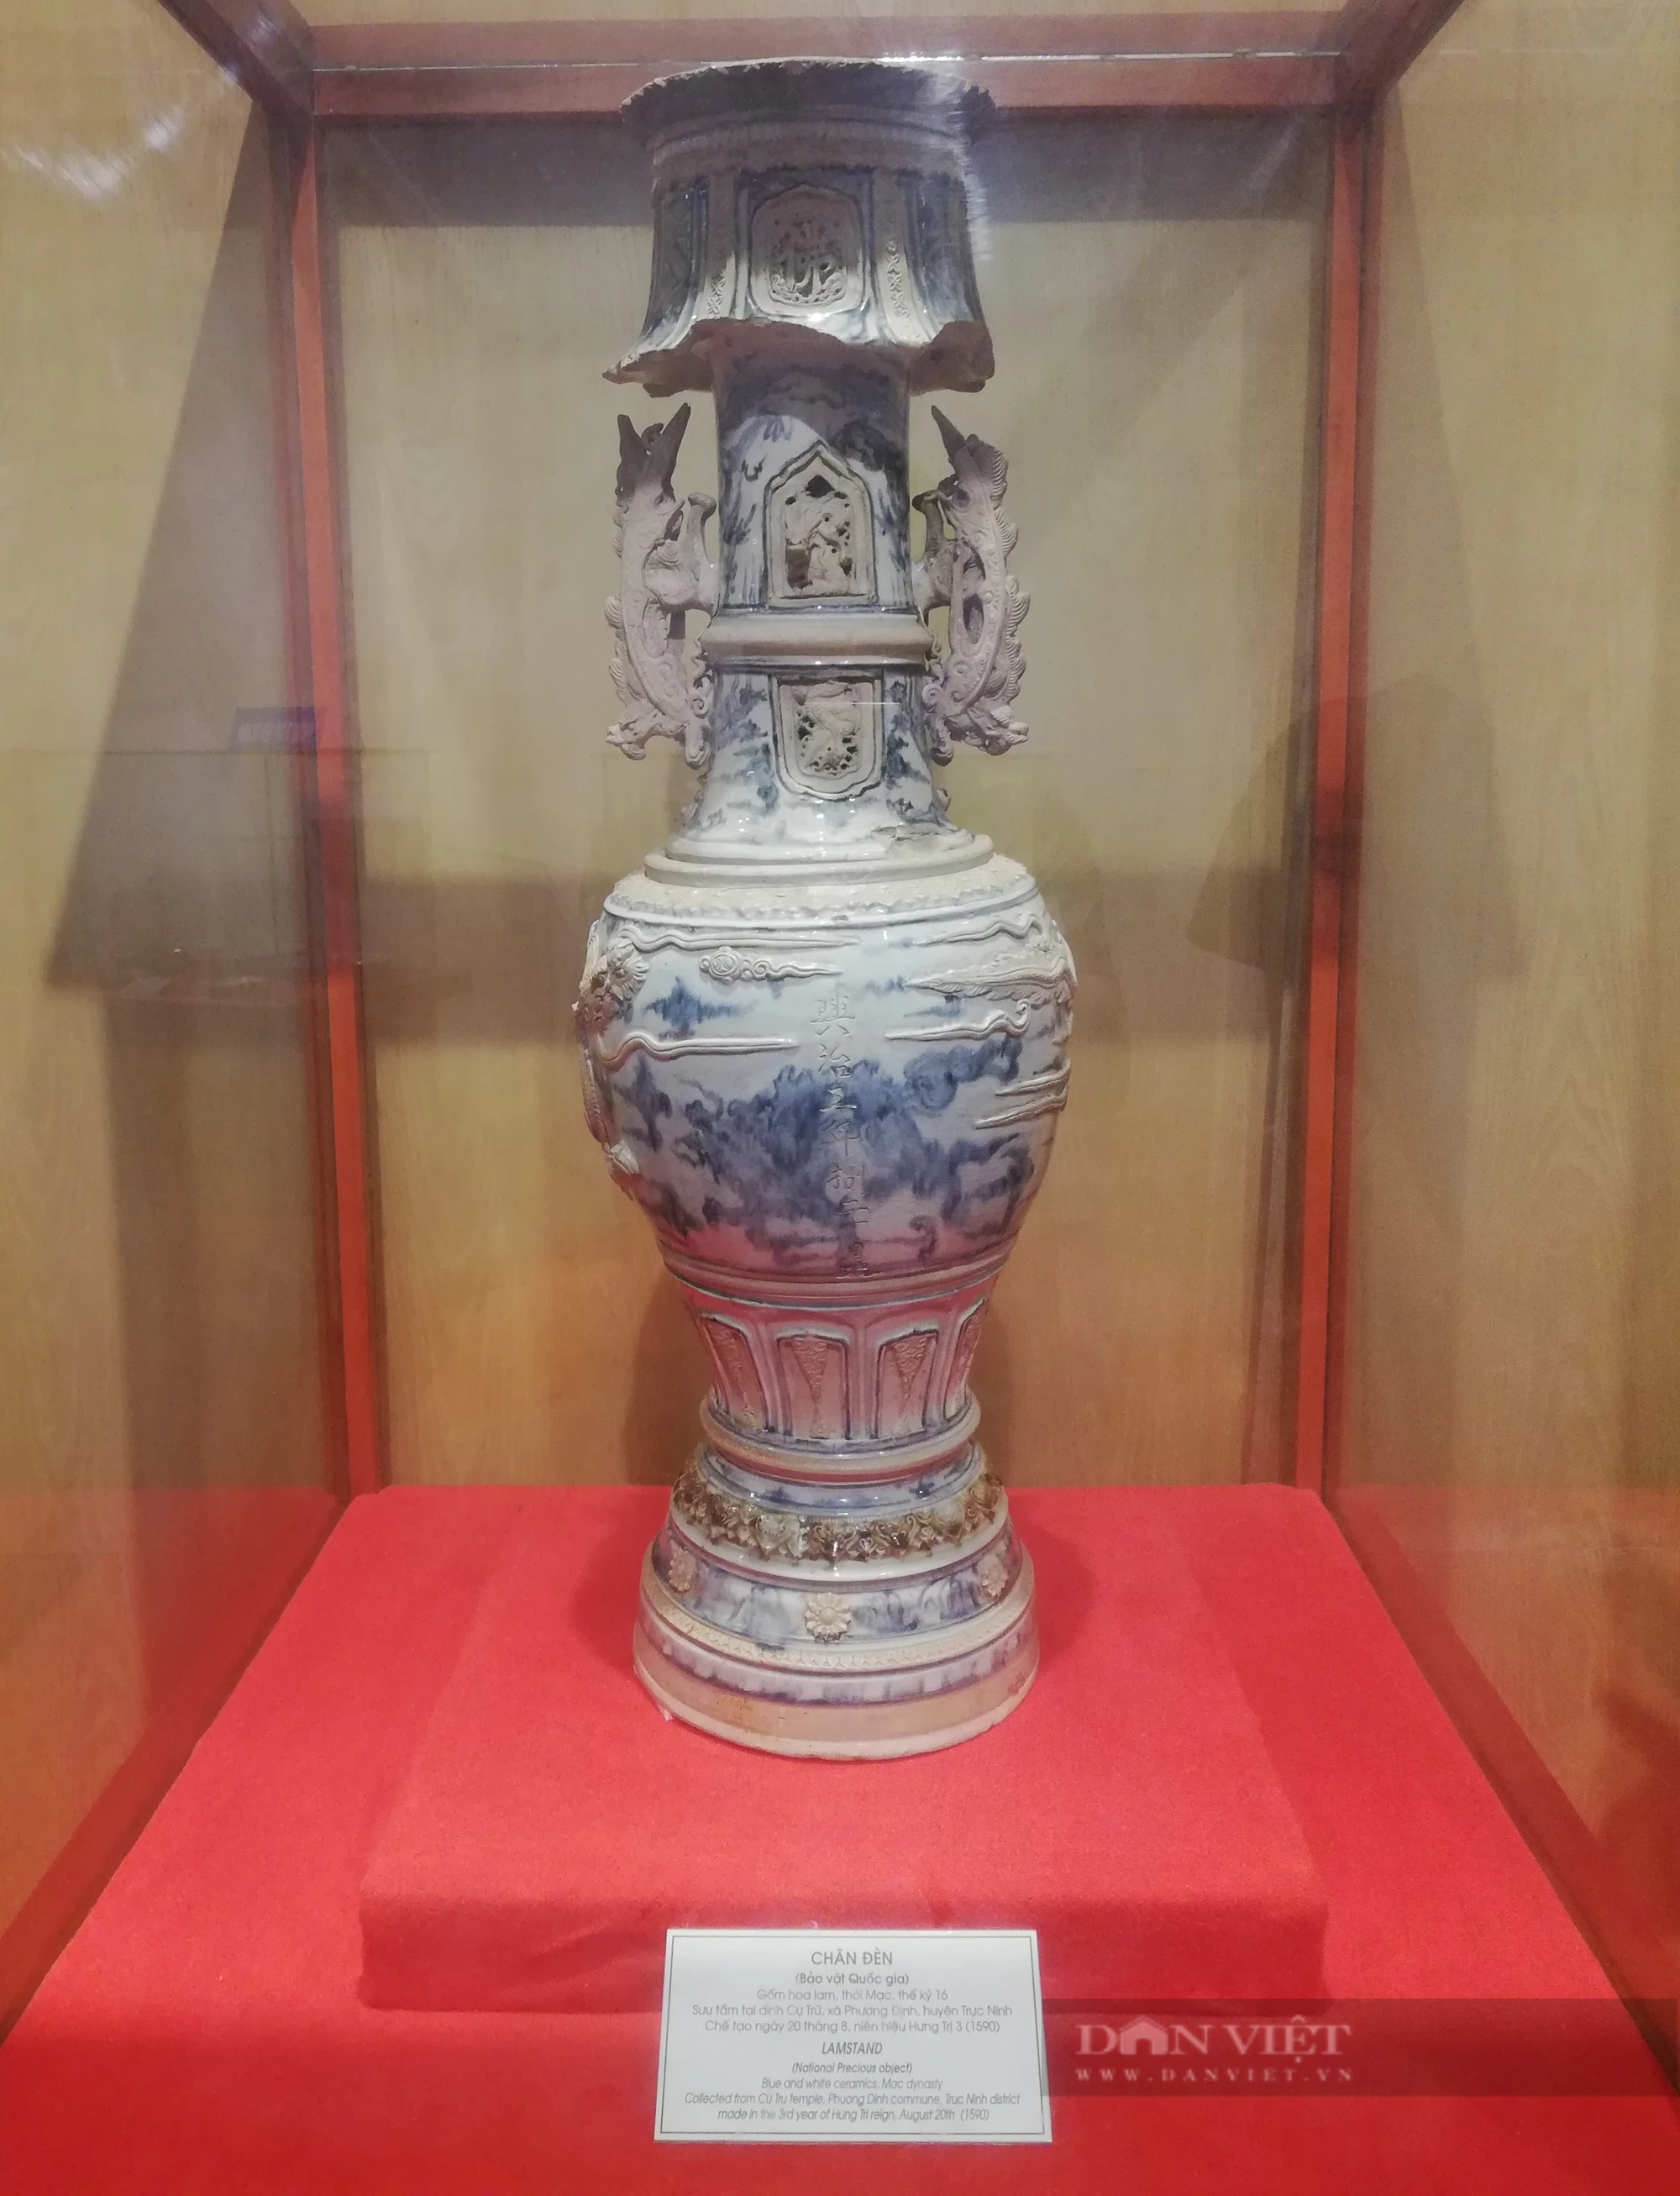 Bộ chân đèn cổ, bát hương cổ hơn 400 năm tuổi là Bảo vật quốc gia của Nam Định có gì đặc biệt?- Ảnh 2.